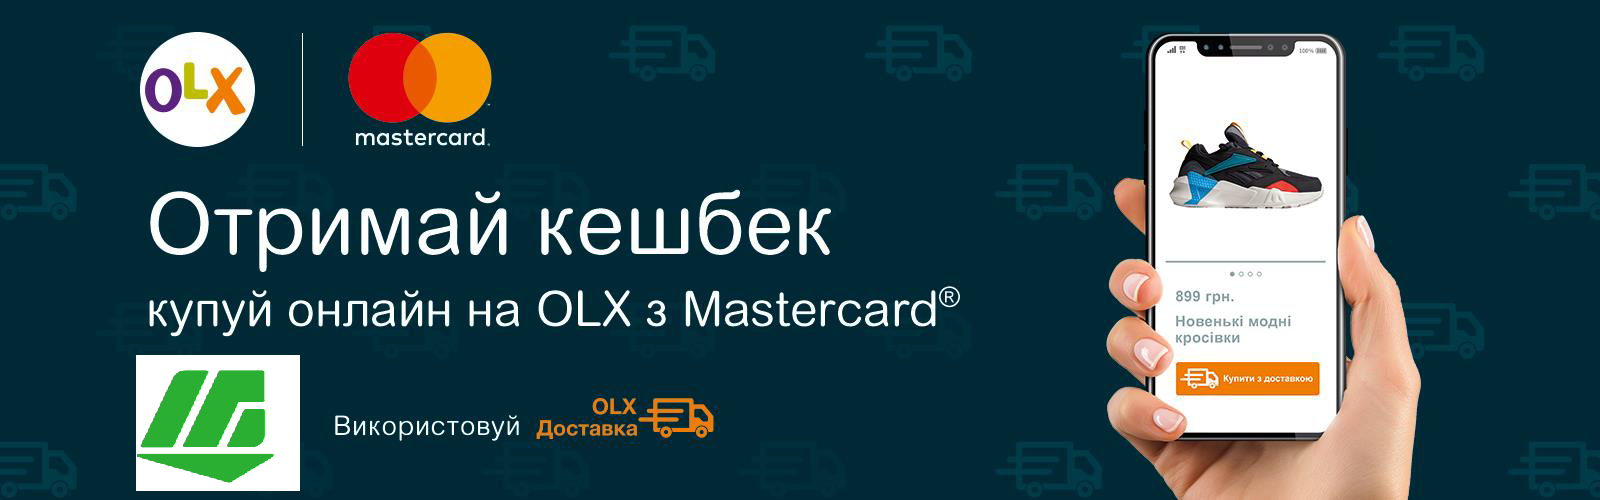 Объявляем новую акцию совместно с Mastercard® и сервисом OLX! - фото - mtb.ua